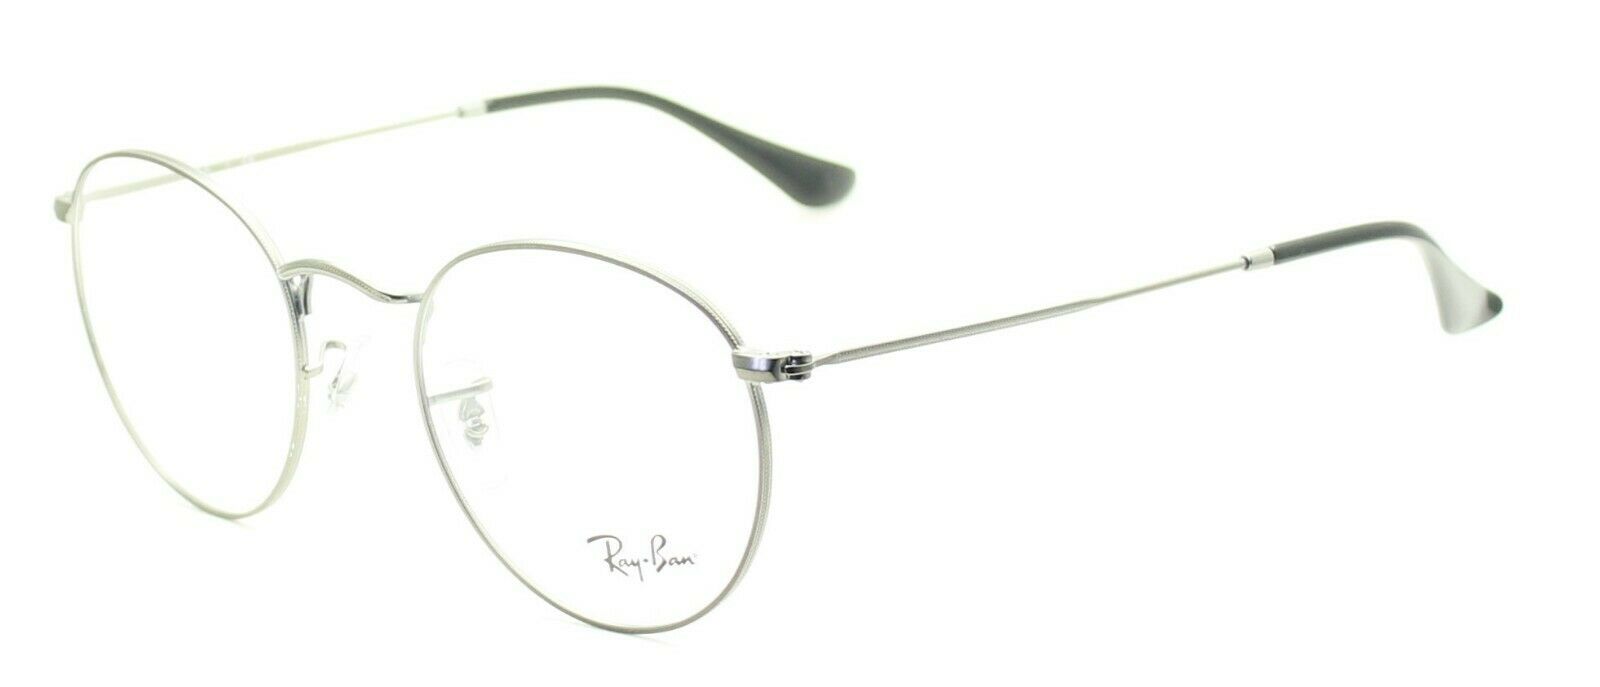 Hechting Voorzichtigheid Bestuurbaar RAY BAN RB 3447V 2620 FRAMES RAYBAN Glasses RX Optical Eyewear Eyeglasses -  New - GGV Eyewear